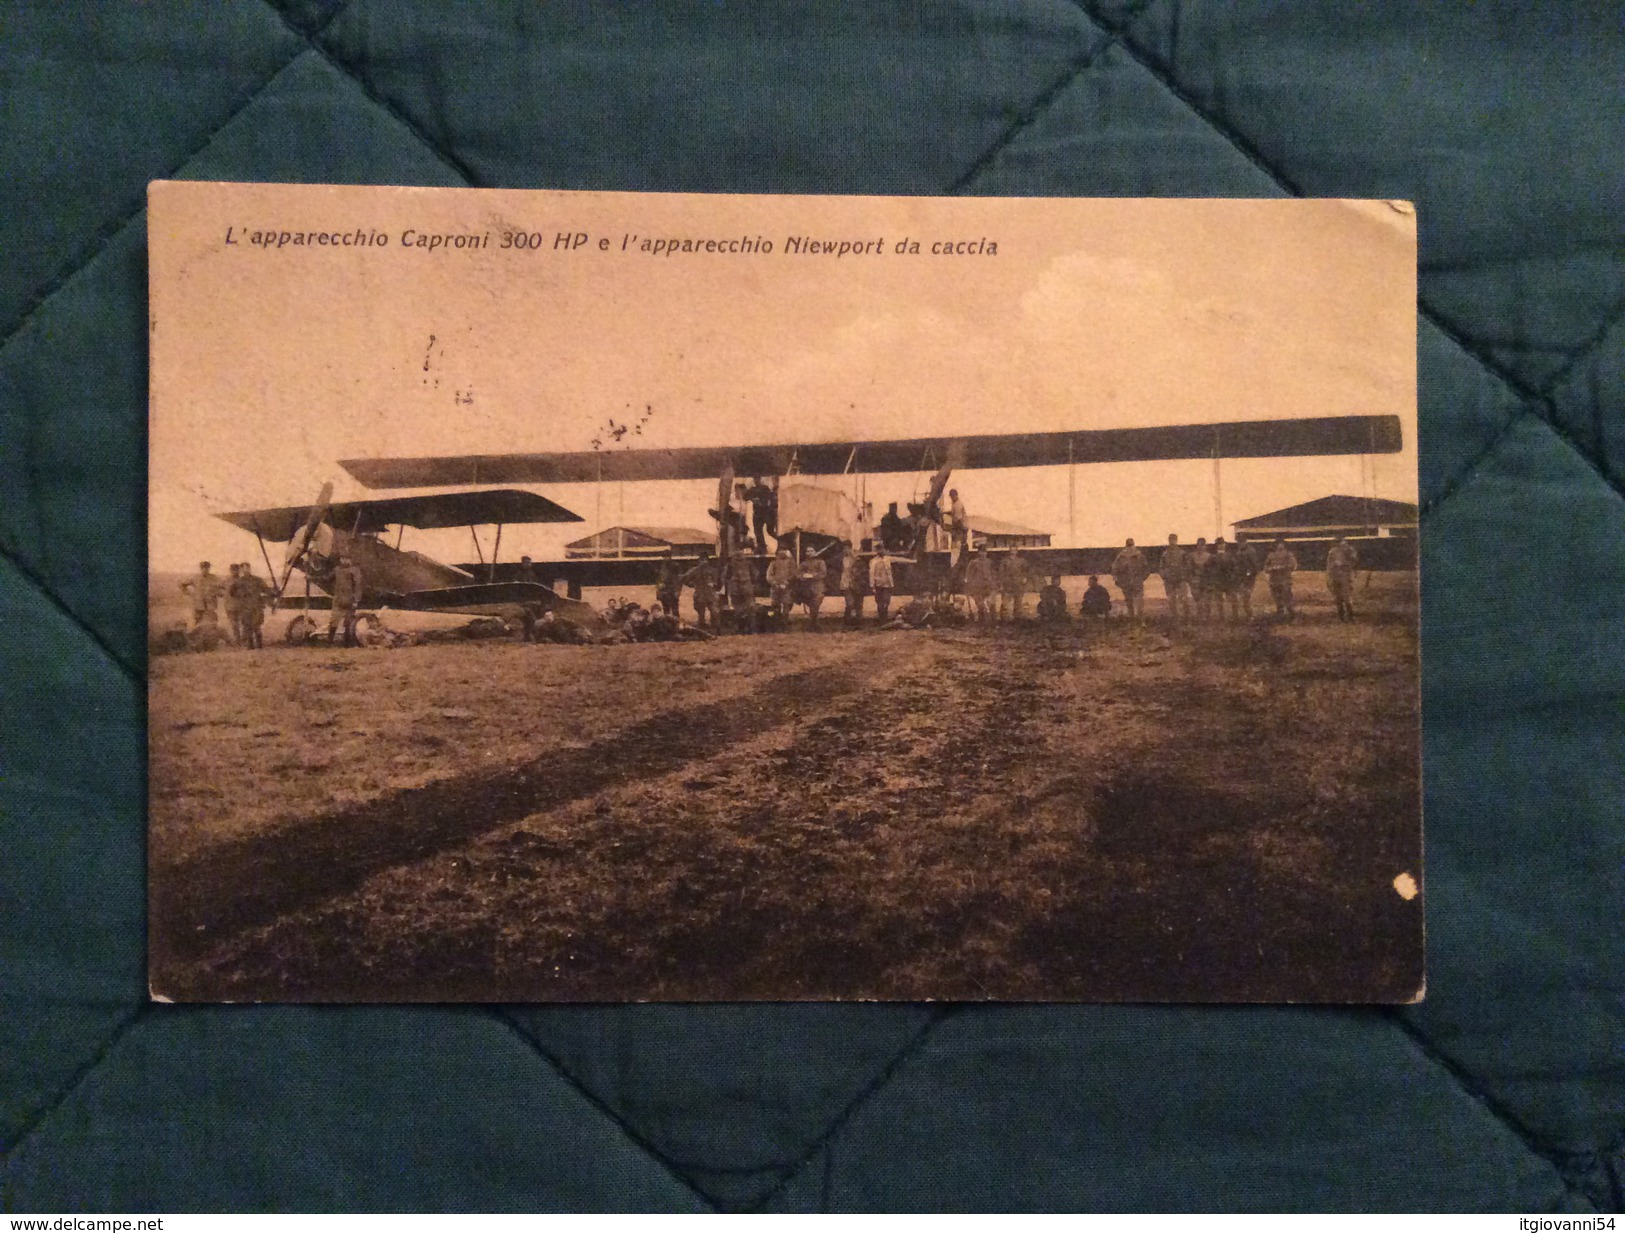 Cartolina Apparecchi Caproni Hp E Newport Da Caccia Guerra 15-18 Viaggiata Nel 1917 - Guerra 1914-18